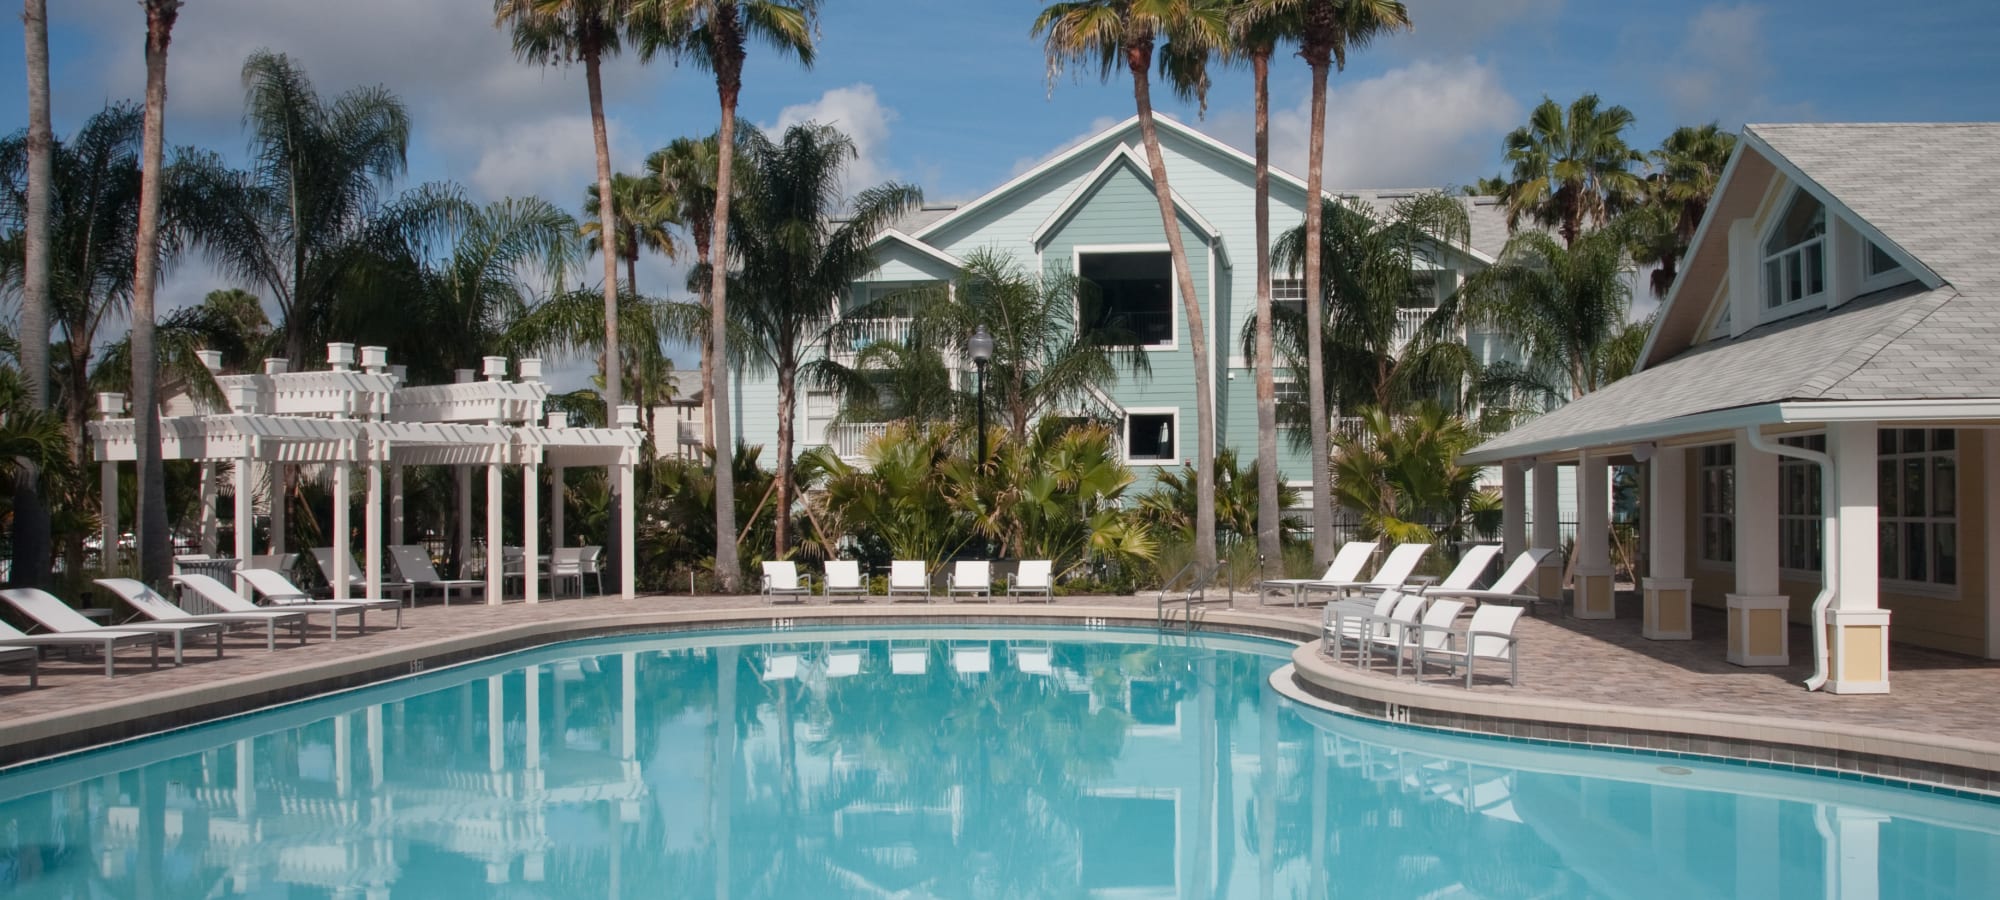 Apartments at Abaco Key in Orlando, Florida